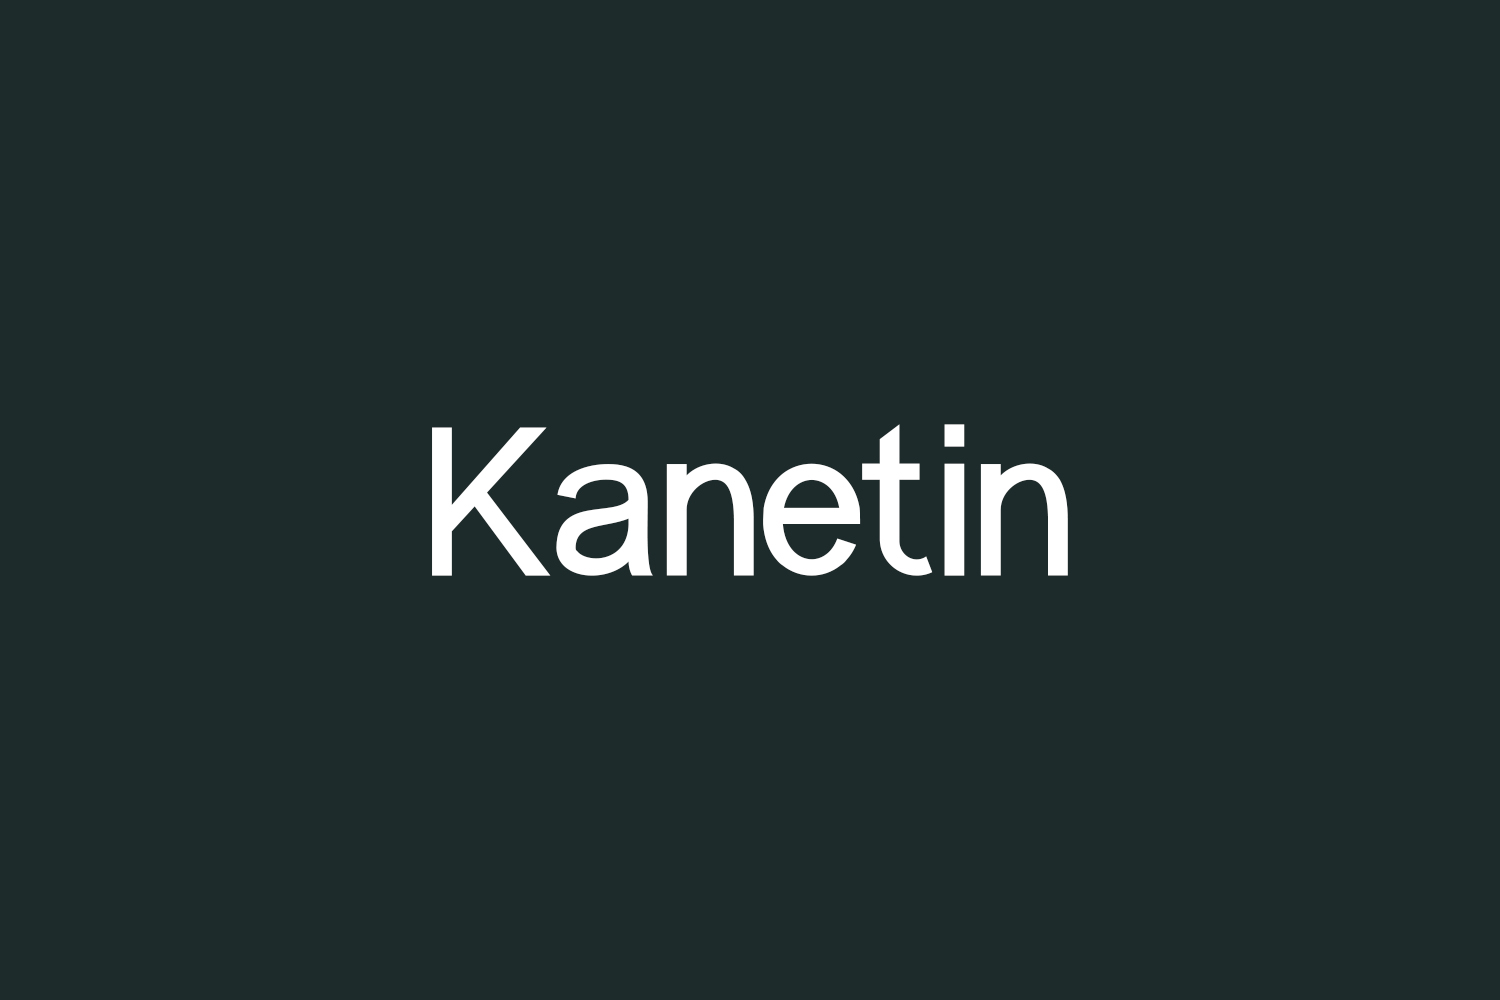 Kanetin Free Font